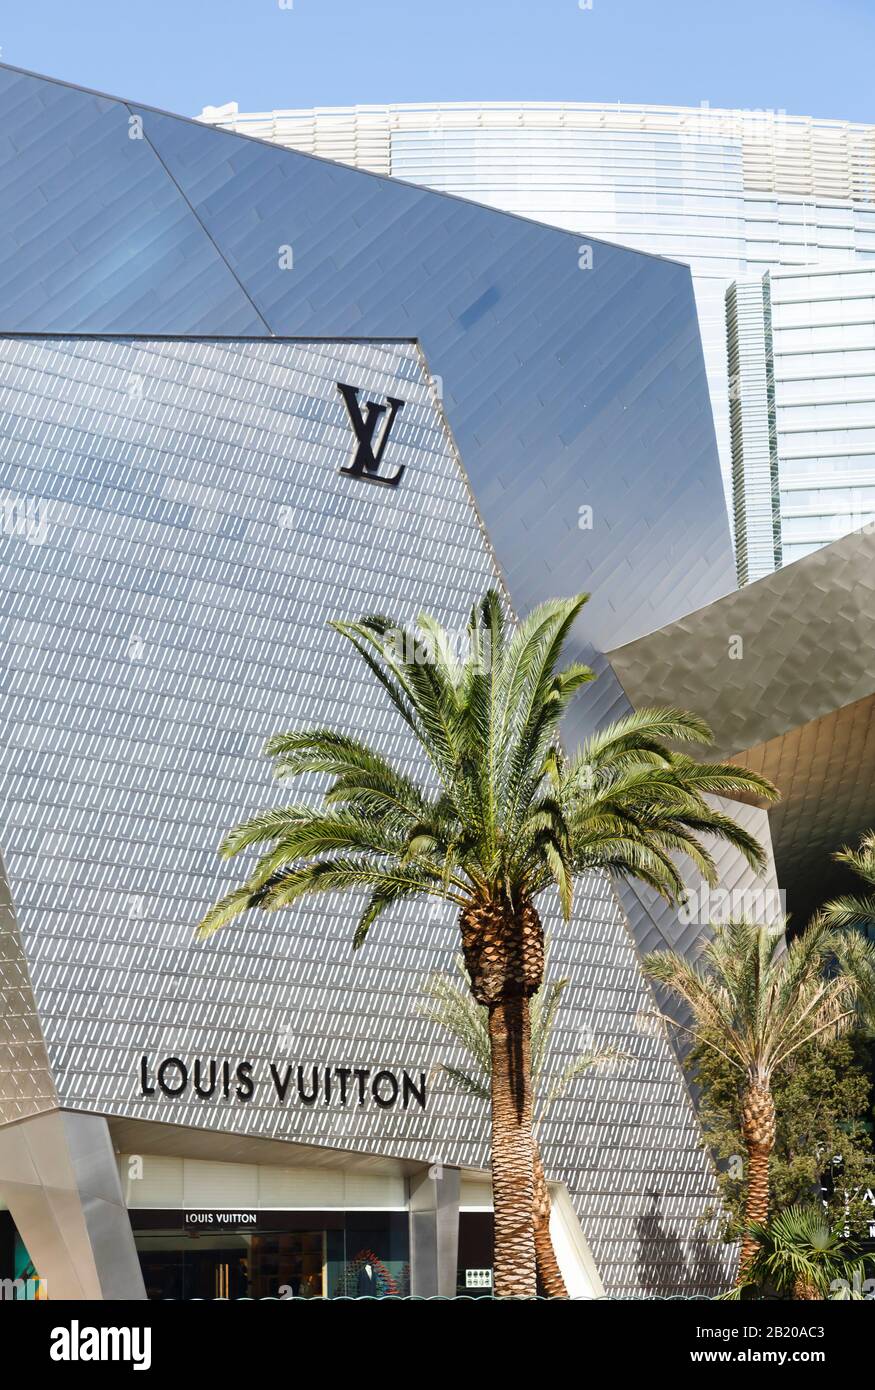 LAS VEGAS, NEVADA - 17 DE MAYO DE 2012. Louis Vuitton Store En Crystals,  Citycenter, Las Vegas Fotografía de stock - Alamy